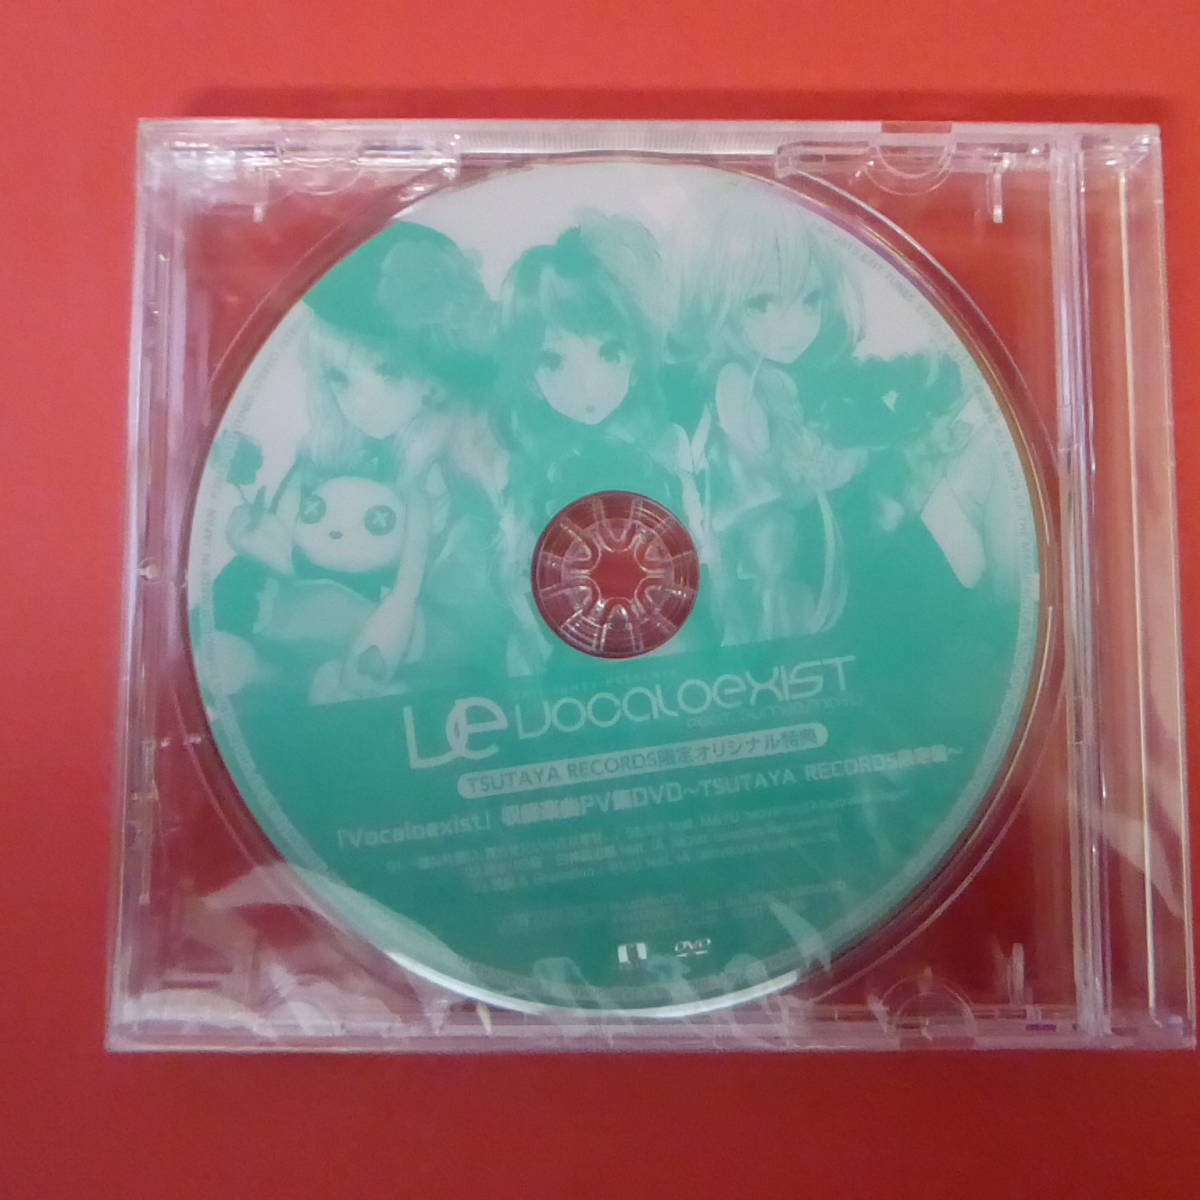 Yahoo!オークション -「tsutaya特典cd」(音楽) の落札相場・落札価格